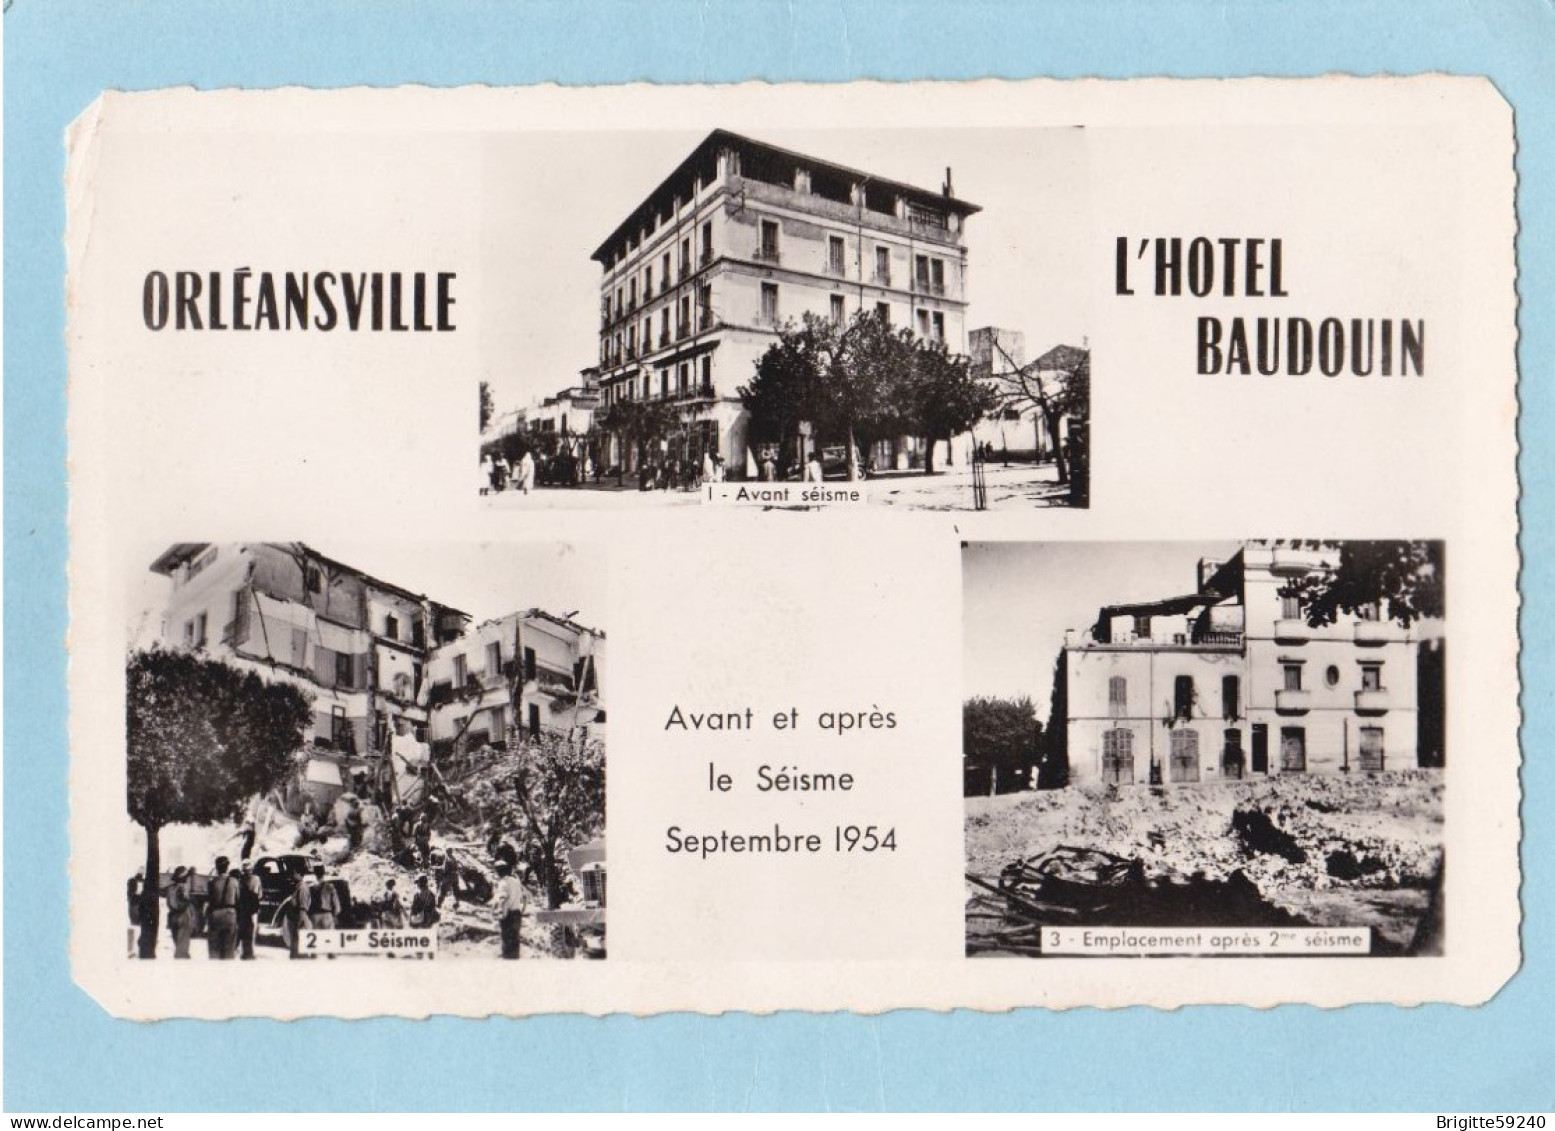 CPSM - ALGERIE - ORLEANSVILLE - L HOTEL BAUDOUIN  AVANT ET APRES LE SEISME - SEPTEMBRE 1954 - Chlef (Orléansville)